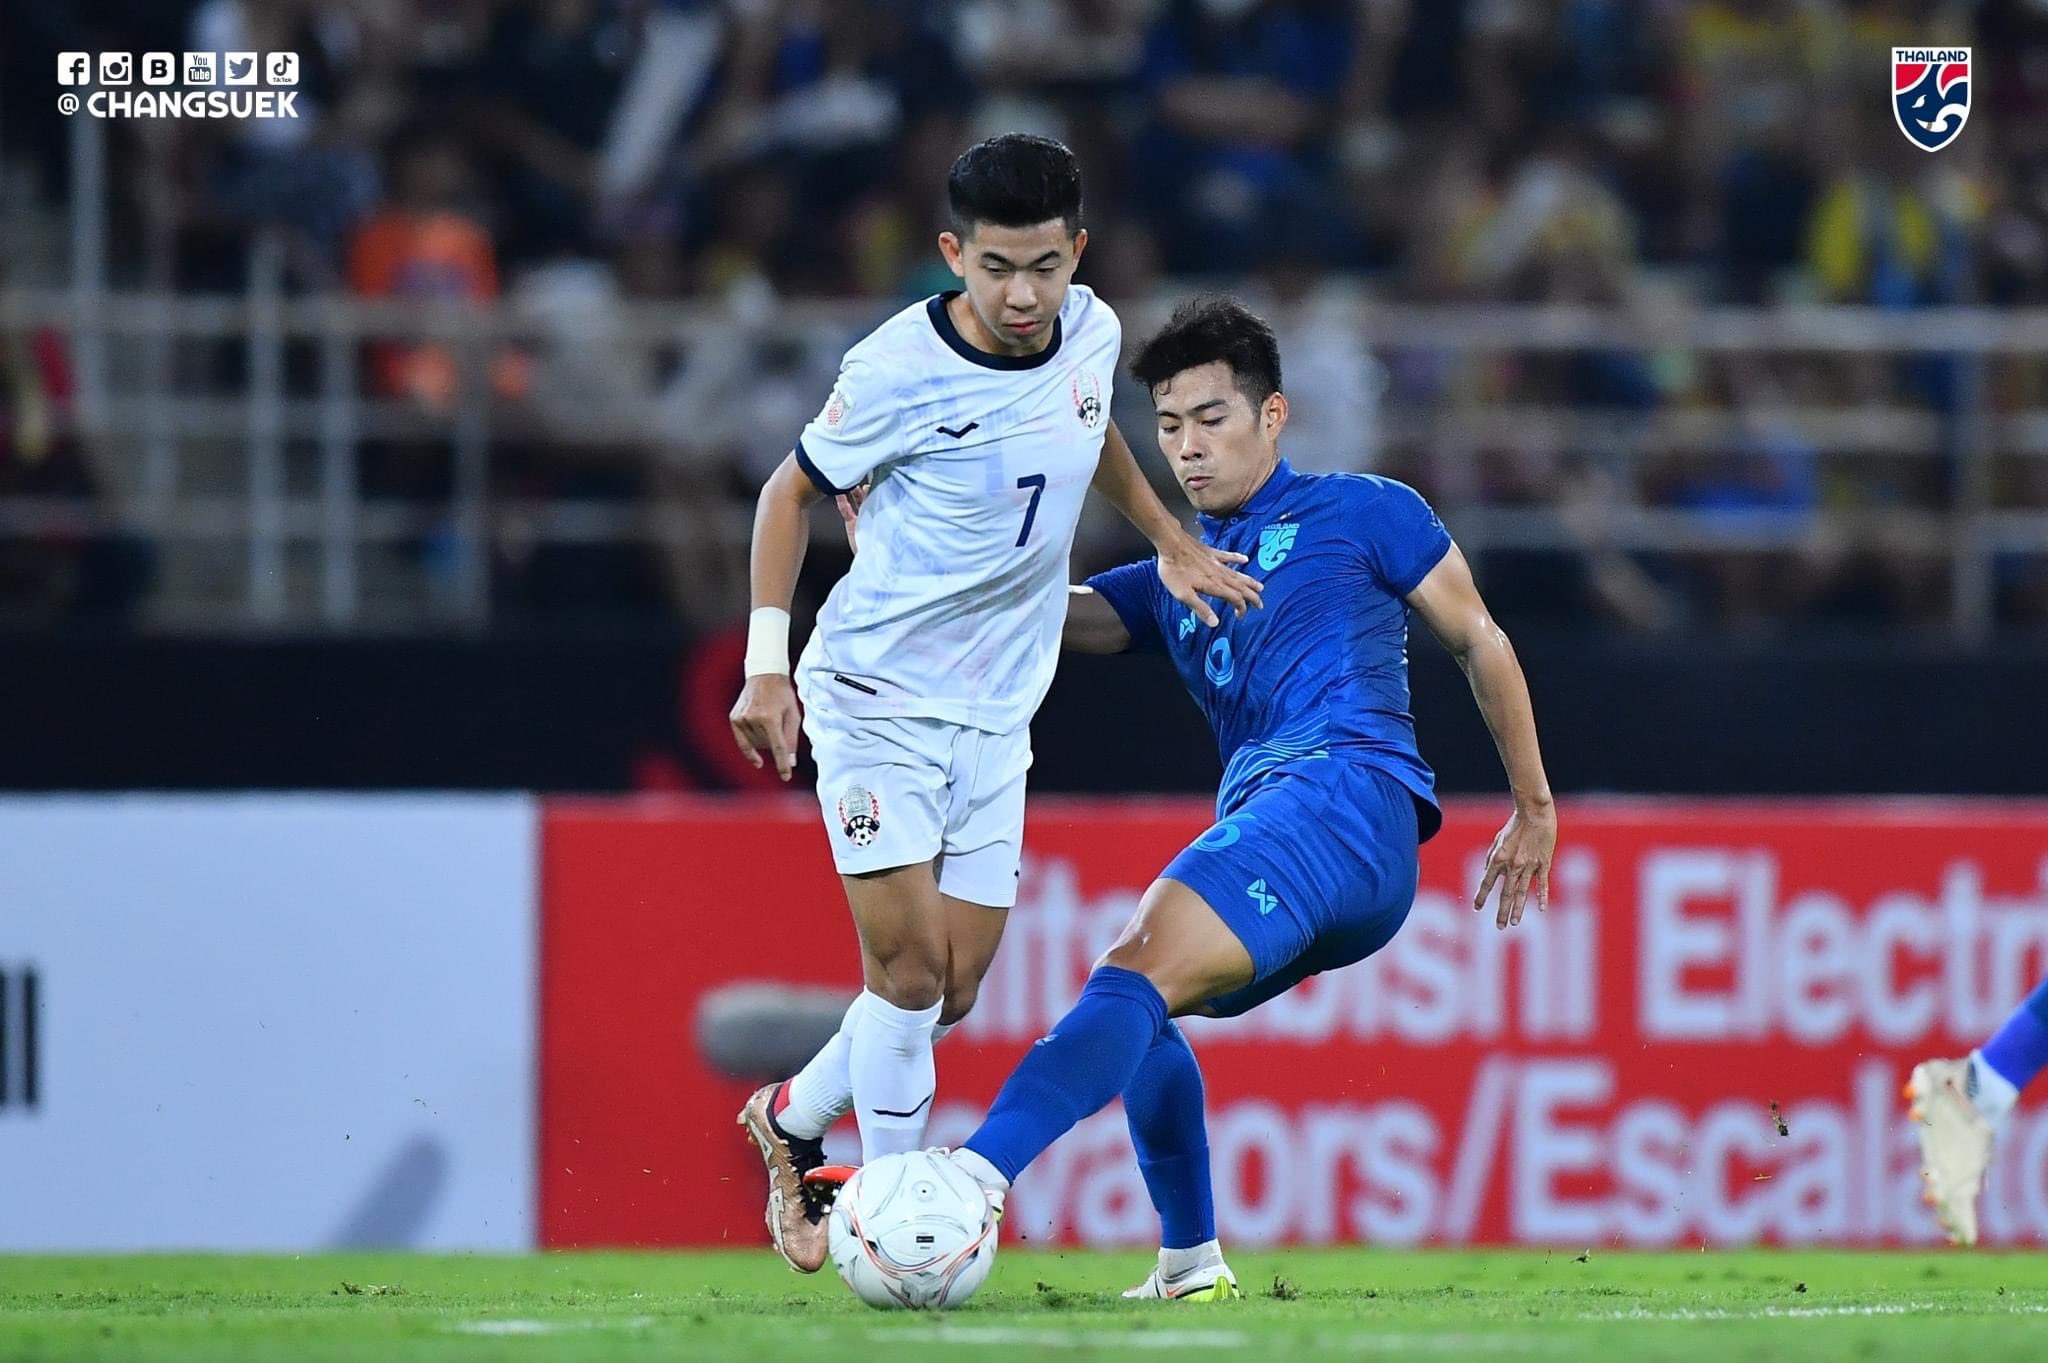 Chiến thắng 3-1 giúp tuyển Thái Lan kết thúc vòng bảng với vị trí nhất bảng A. Đối thủ của “Voi chiến” ở vòng bán kết sẽ là đội đứng thứ 2 bảng B.